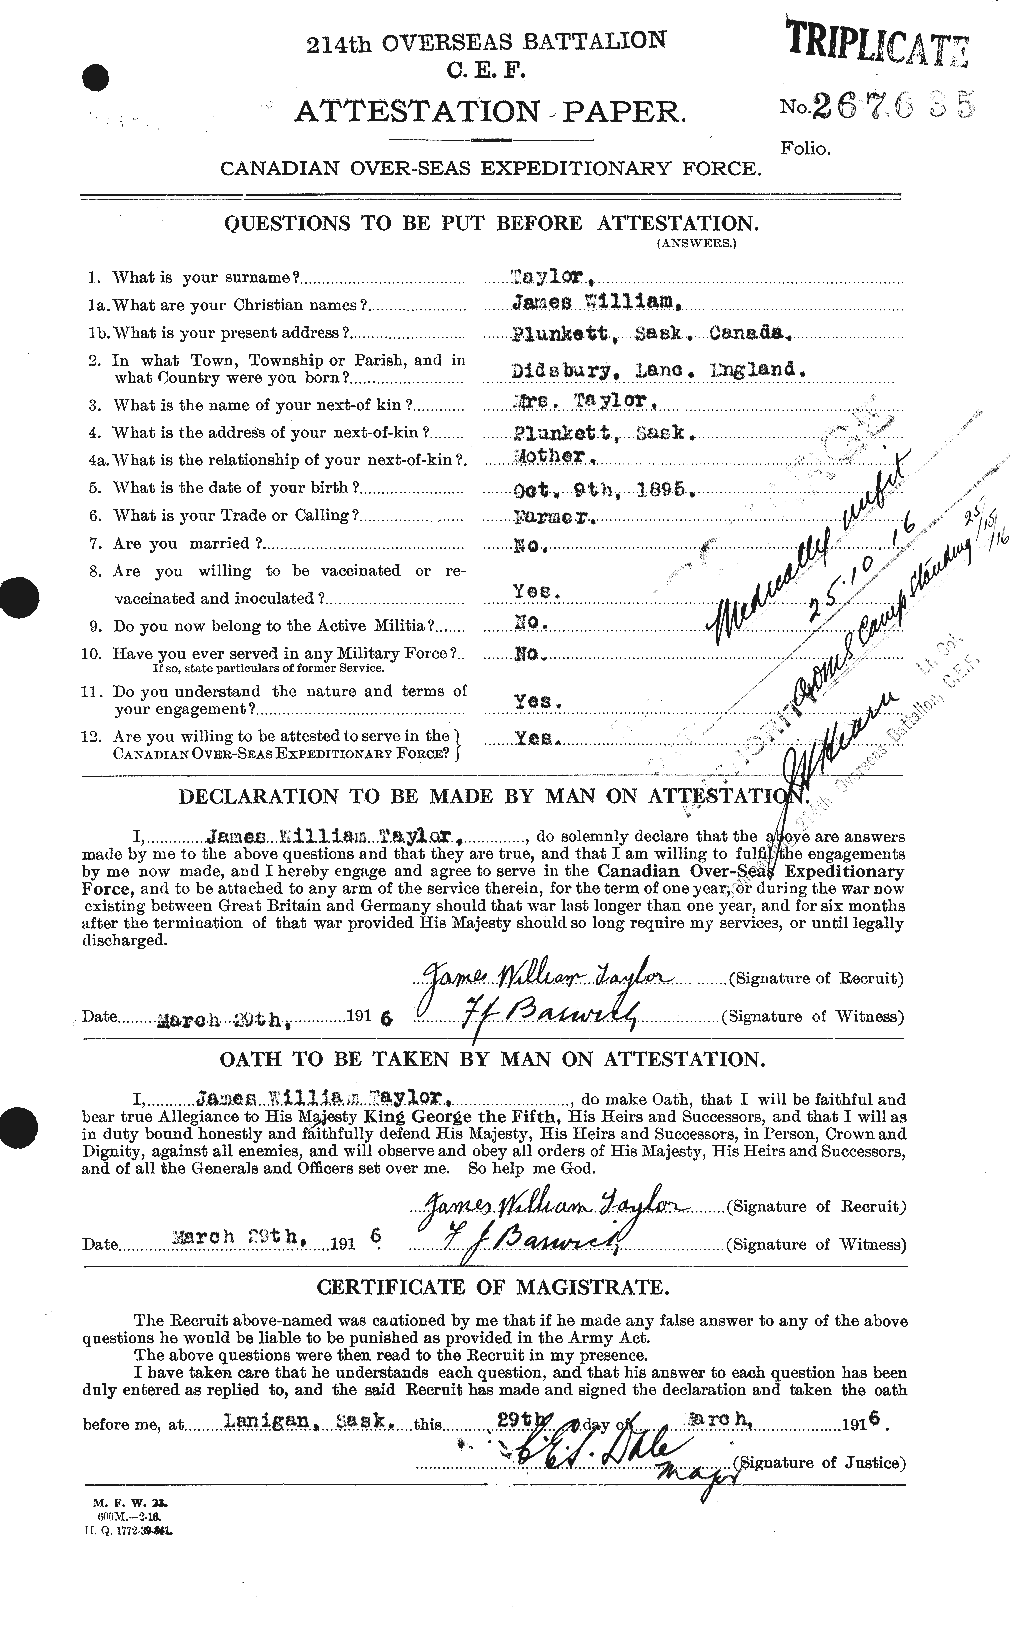 Dossiers du Personnel de la Première Guerre mondiale - CEC 626967a